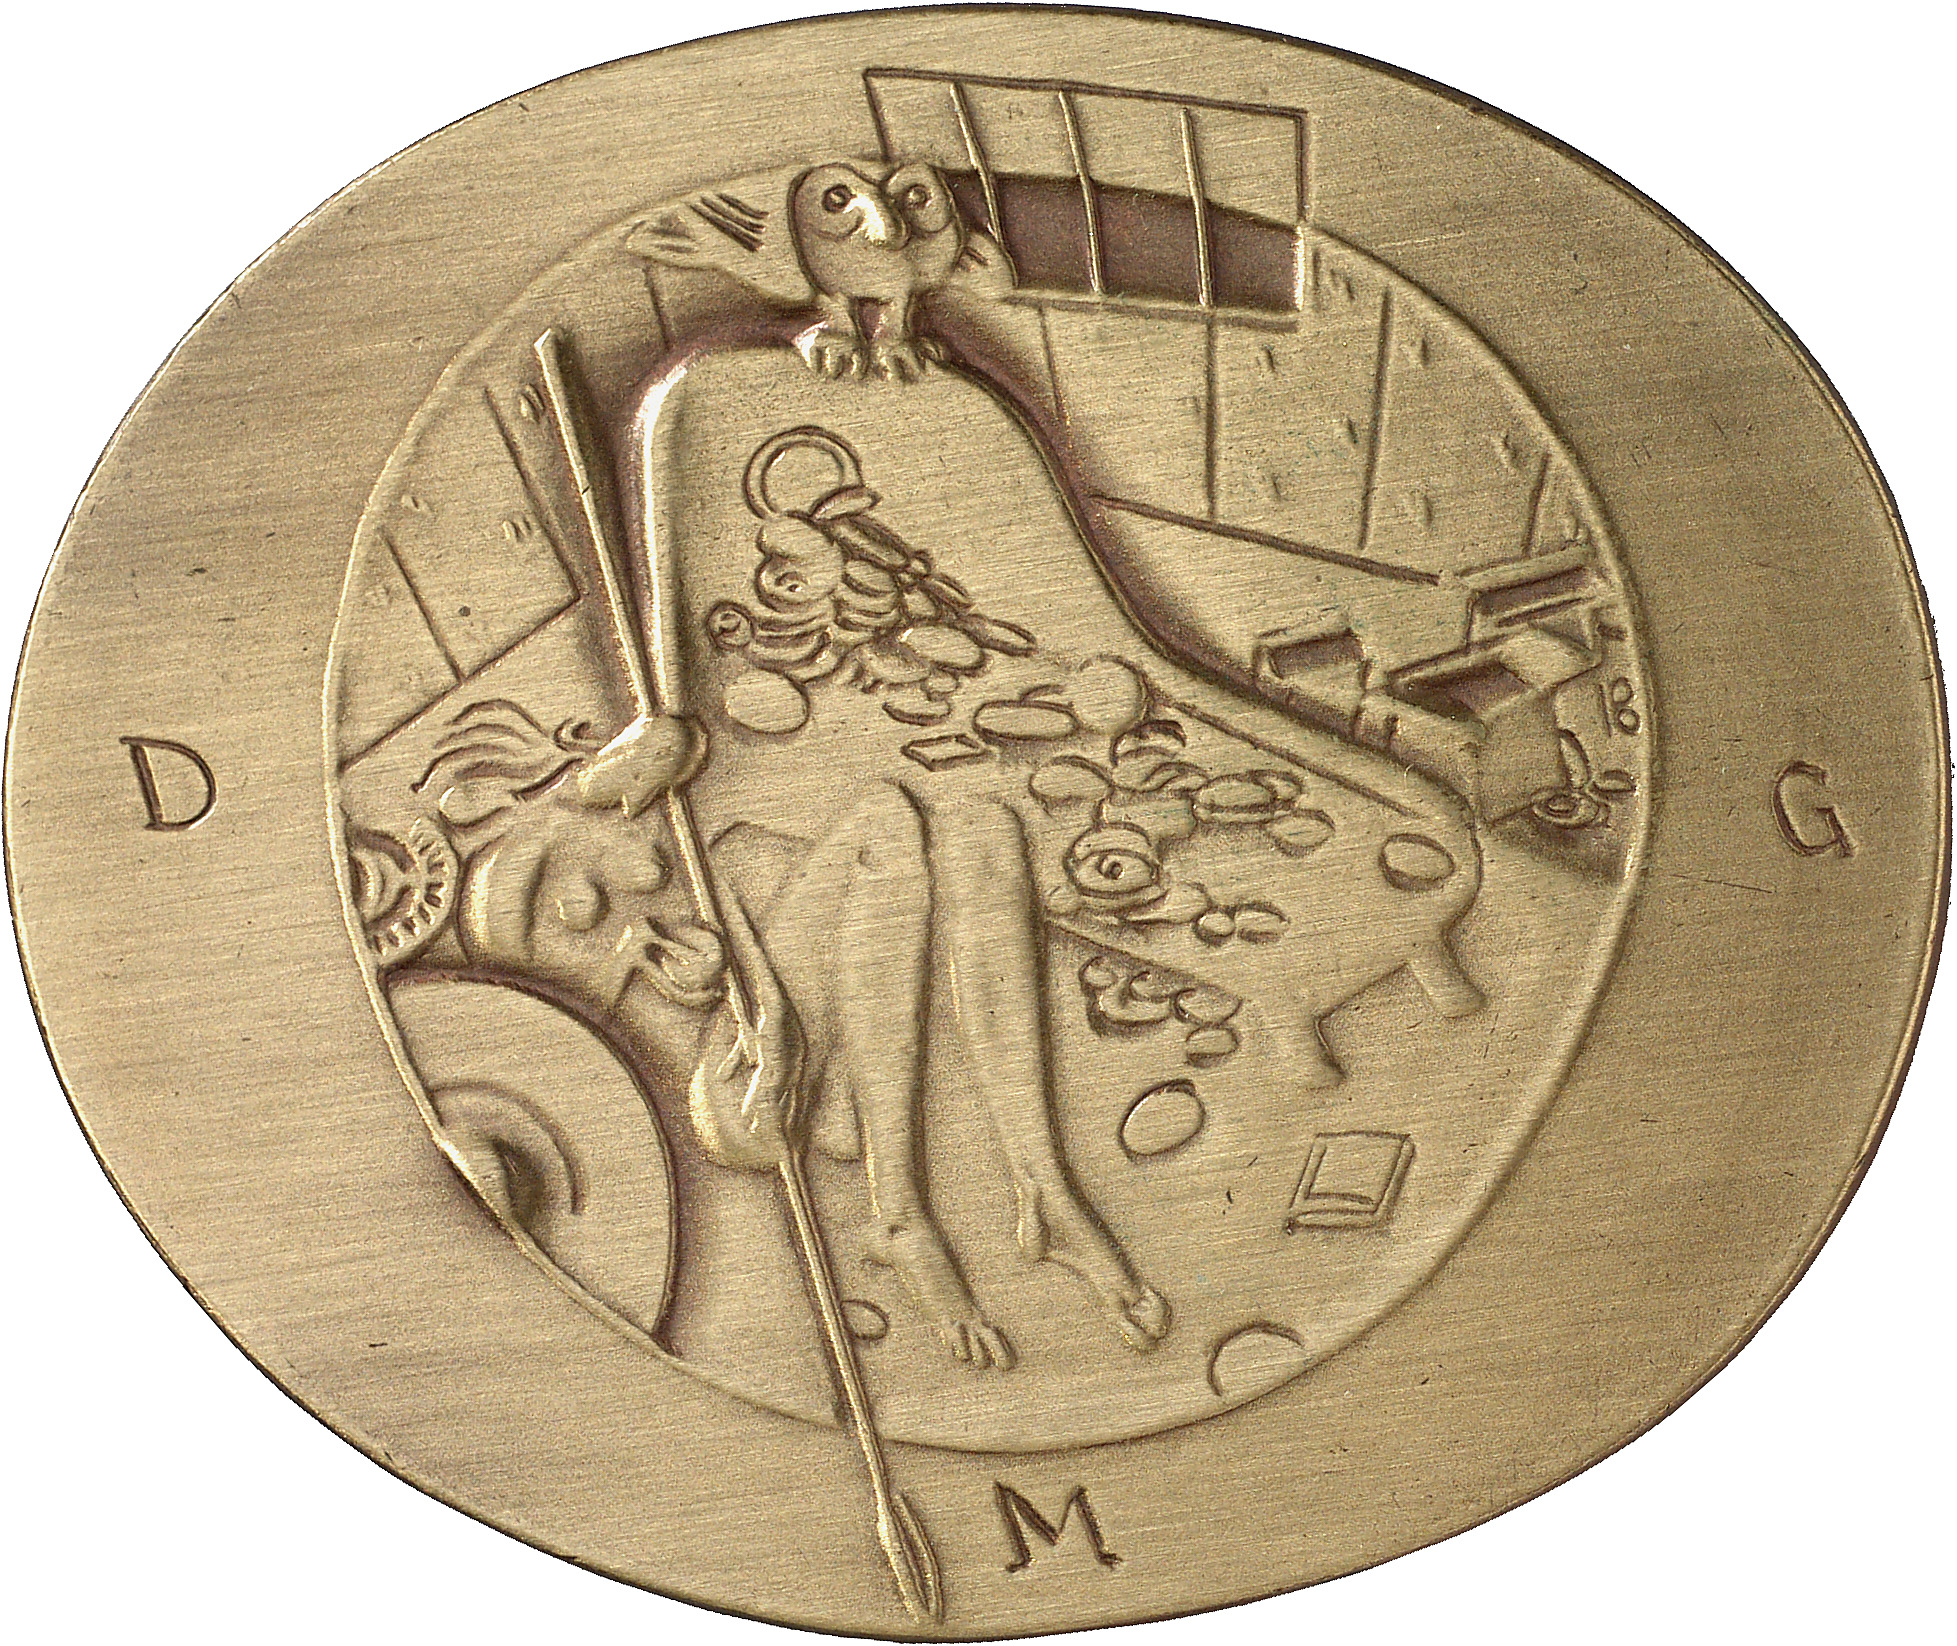 Burgeff, Hans Karl: Athena mit Medaillen